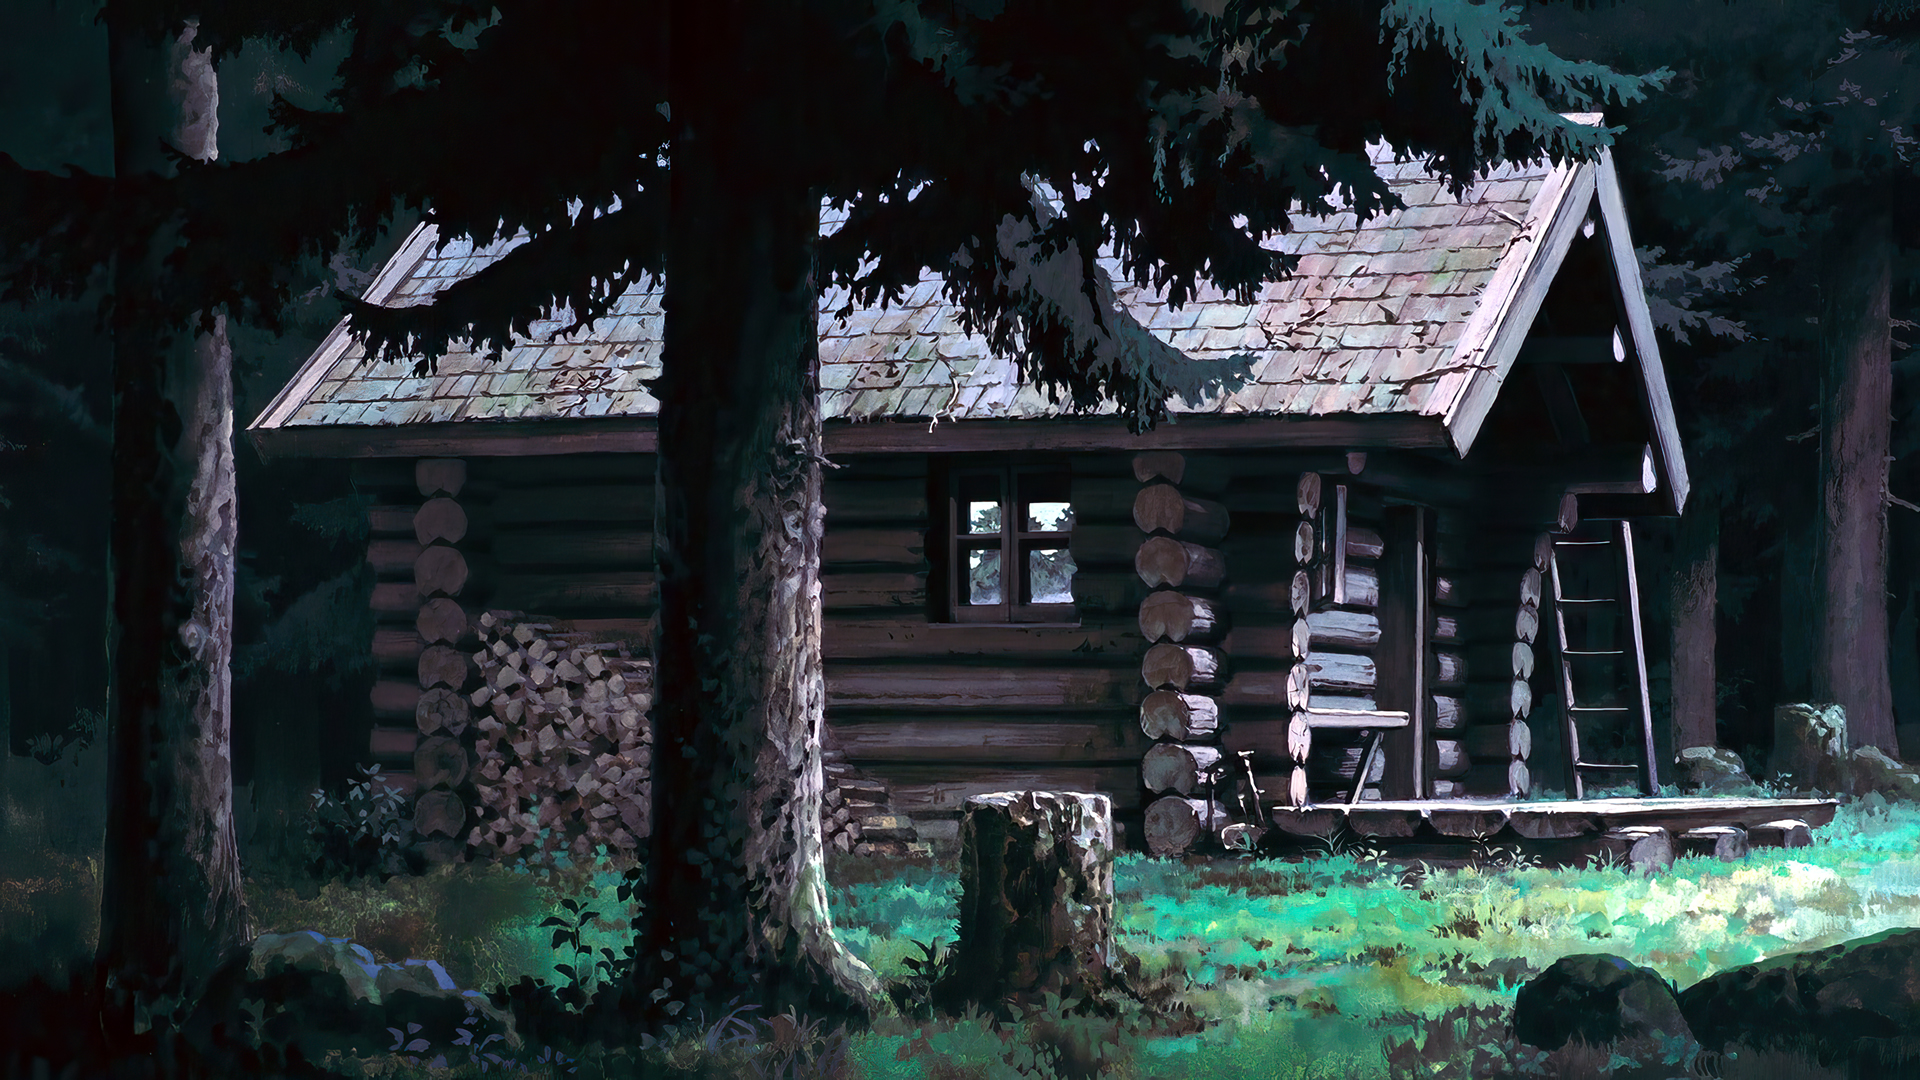 ARTBYRYAN - Cabin in the woods!